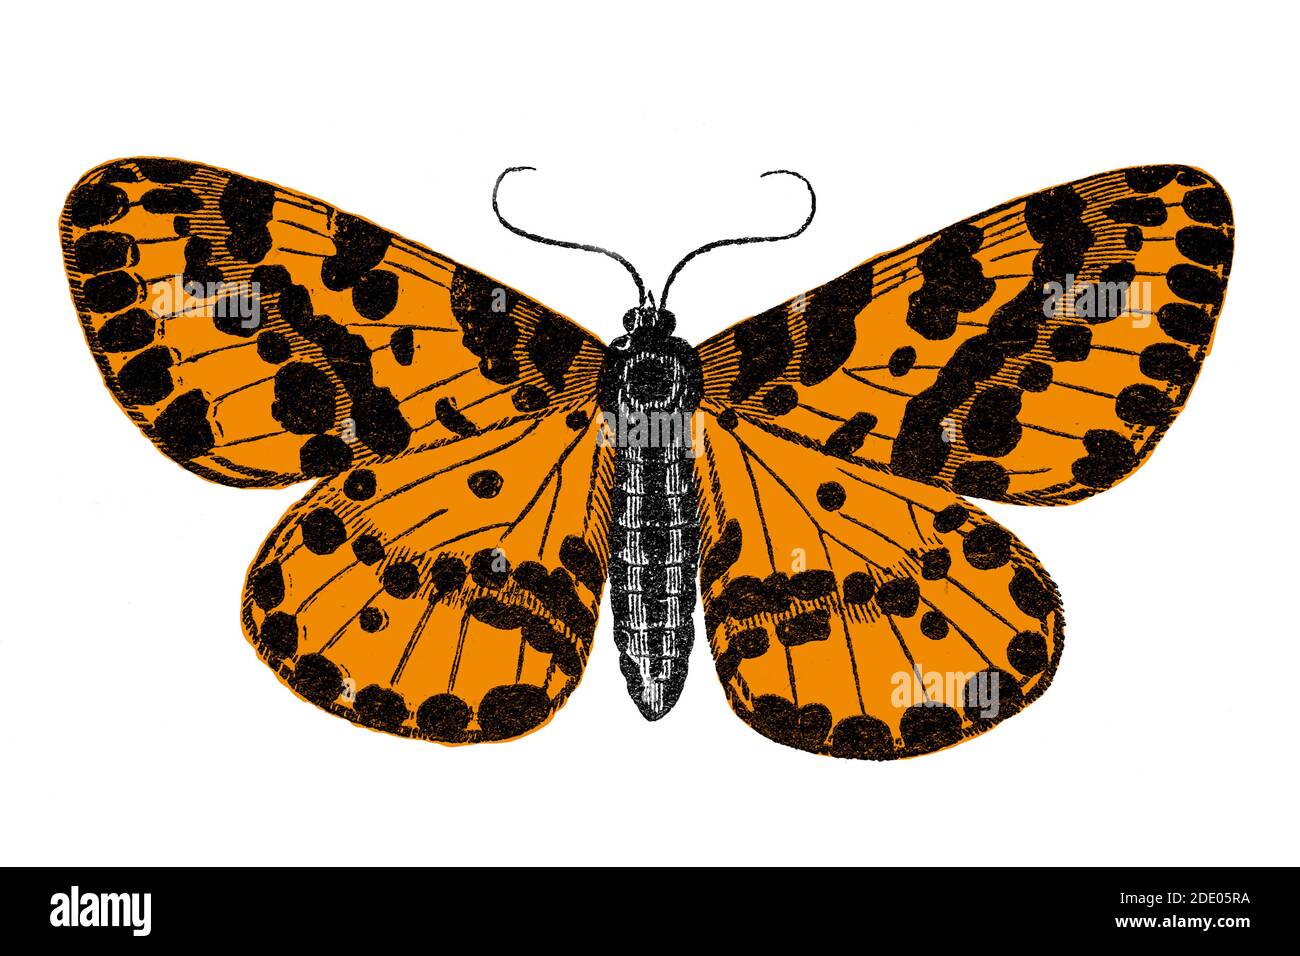 Schmetterling (Abraxas grossulariata) Holzschnitt-Illustration in zwei Farben gedruckt Stockfoto